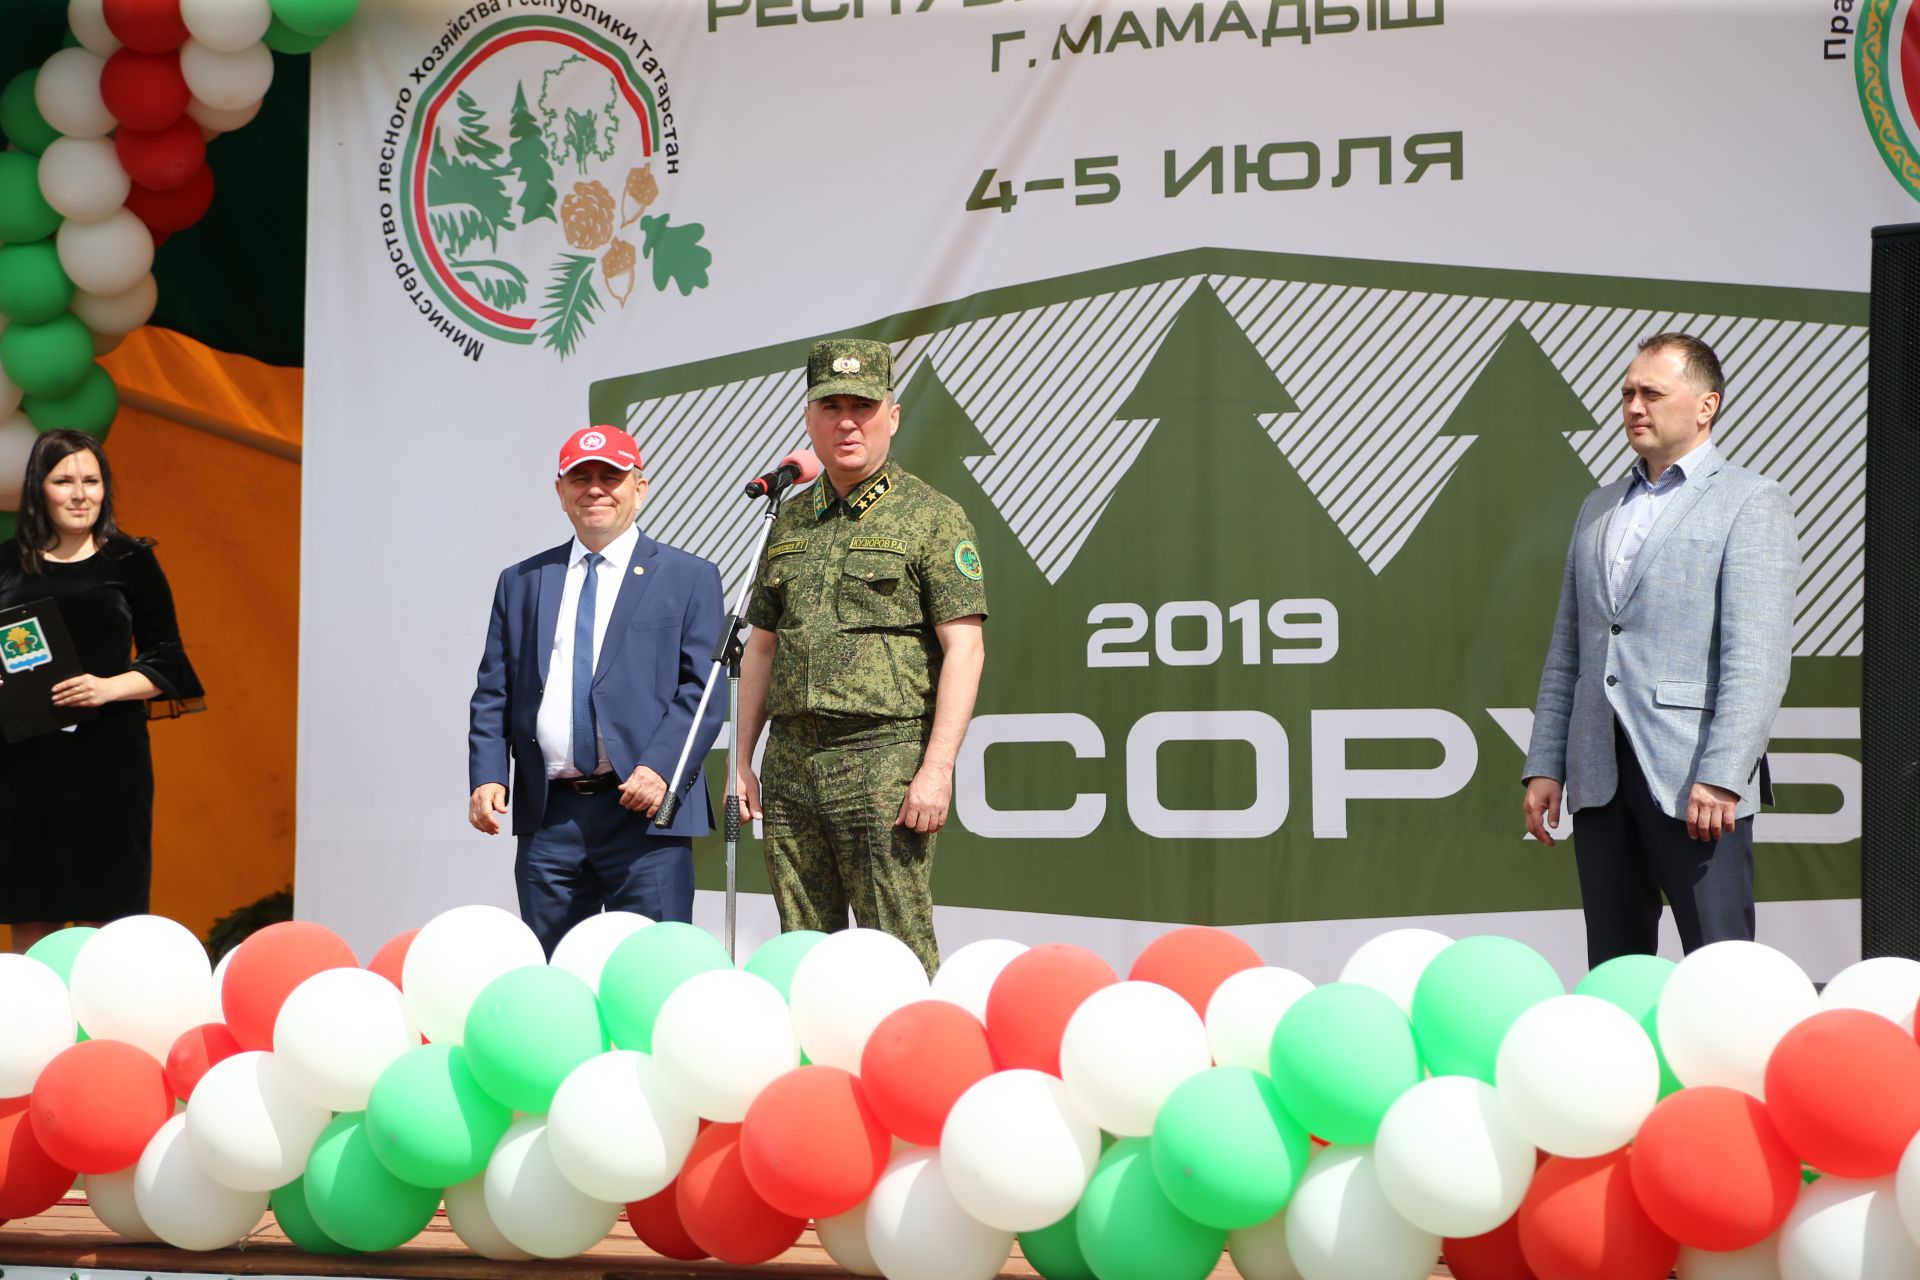 Фоторепортаж торжественного открытия Регионального этапа чемпионата "Лесоруб - 2019"